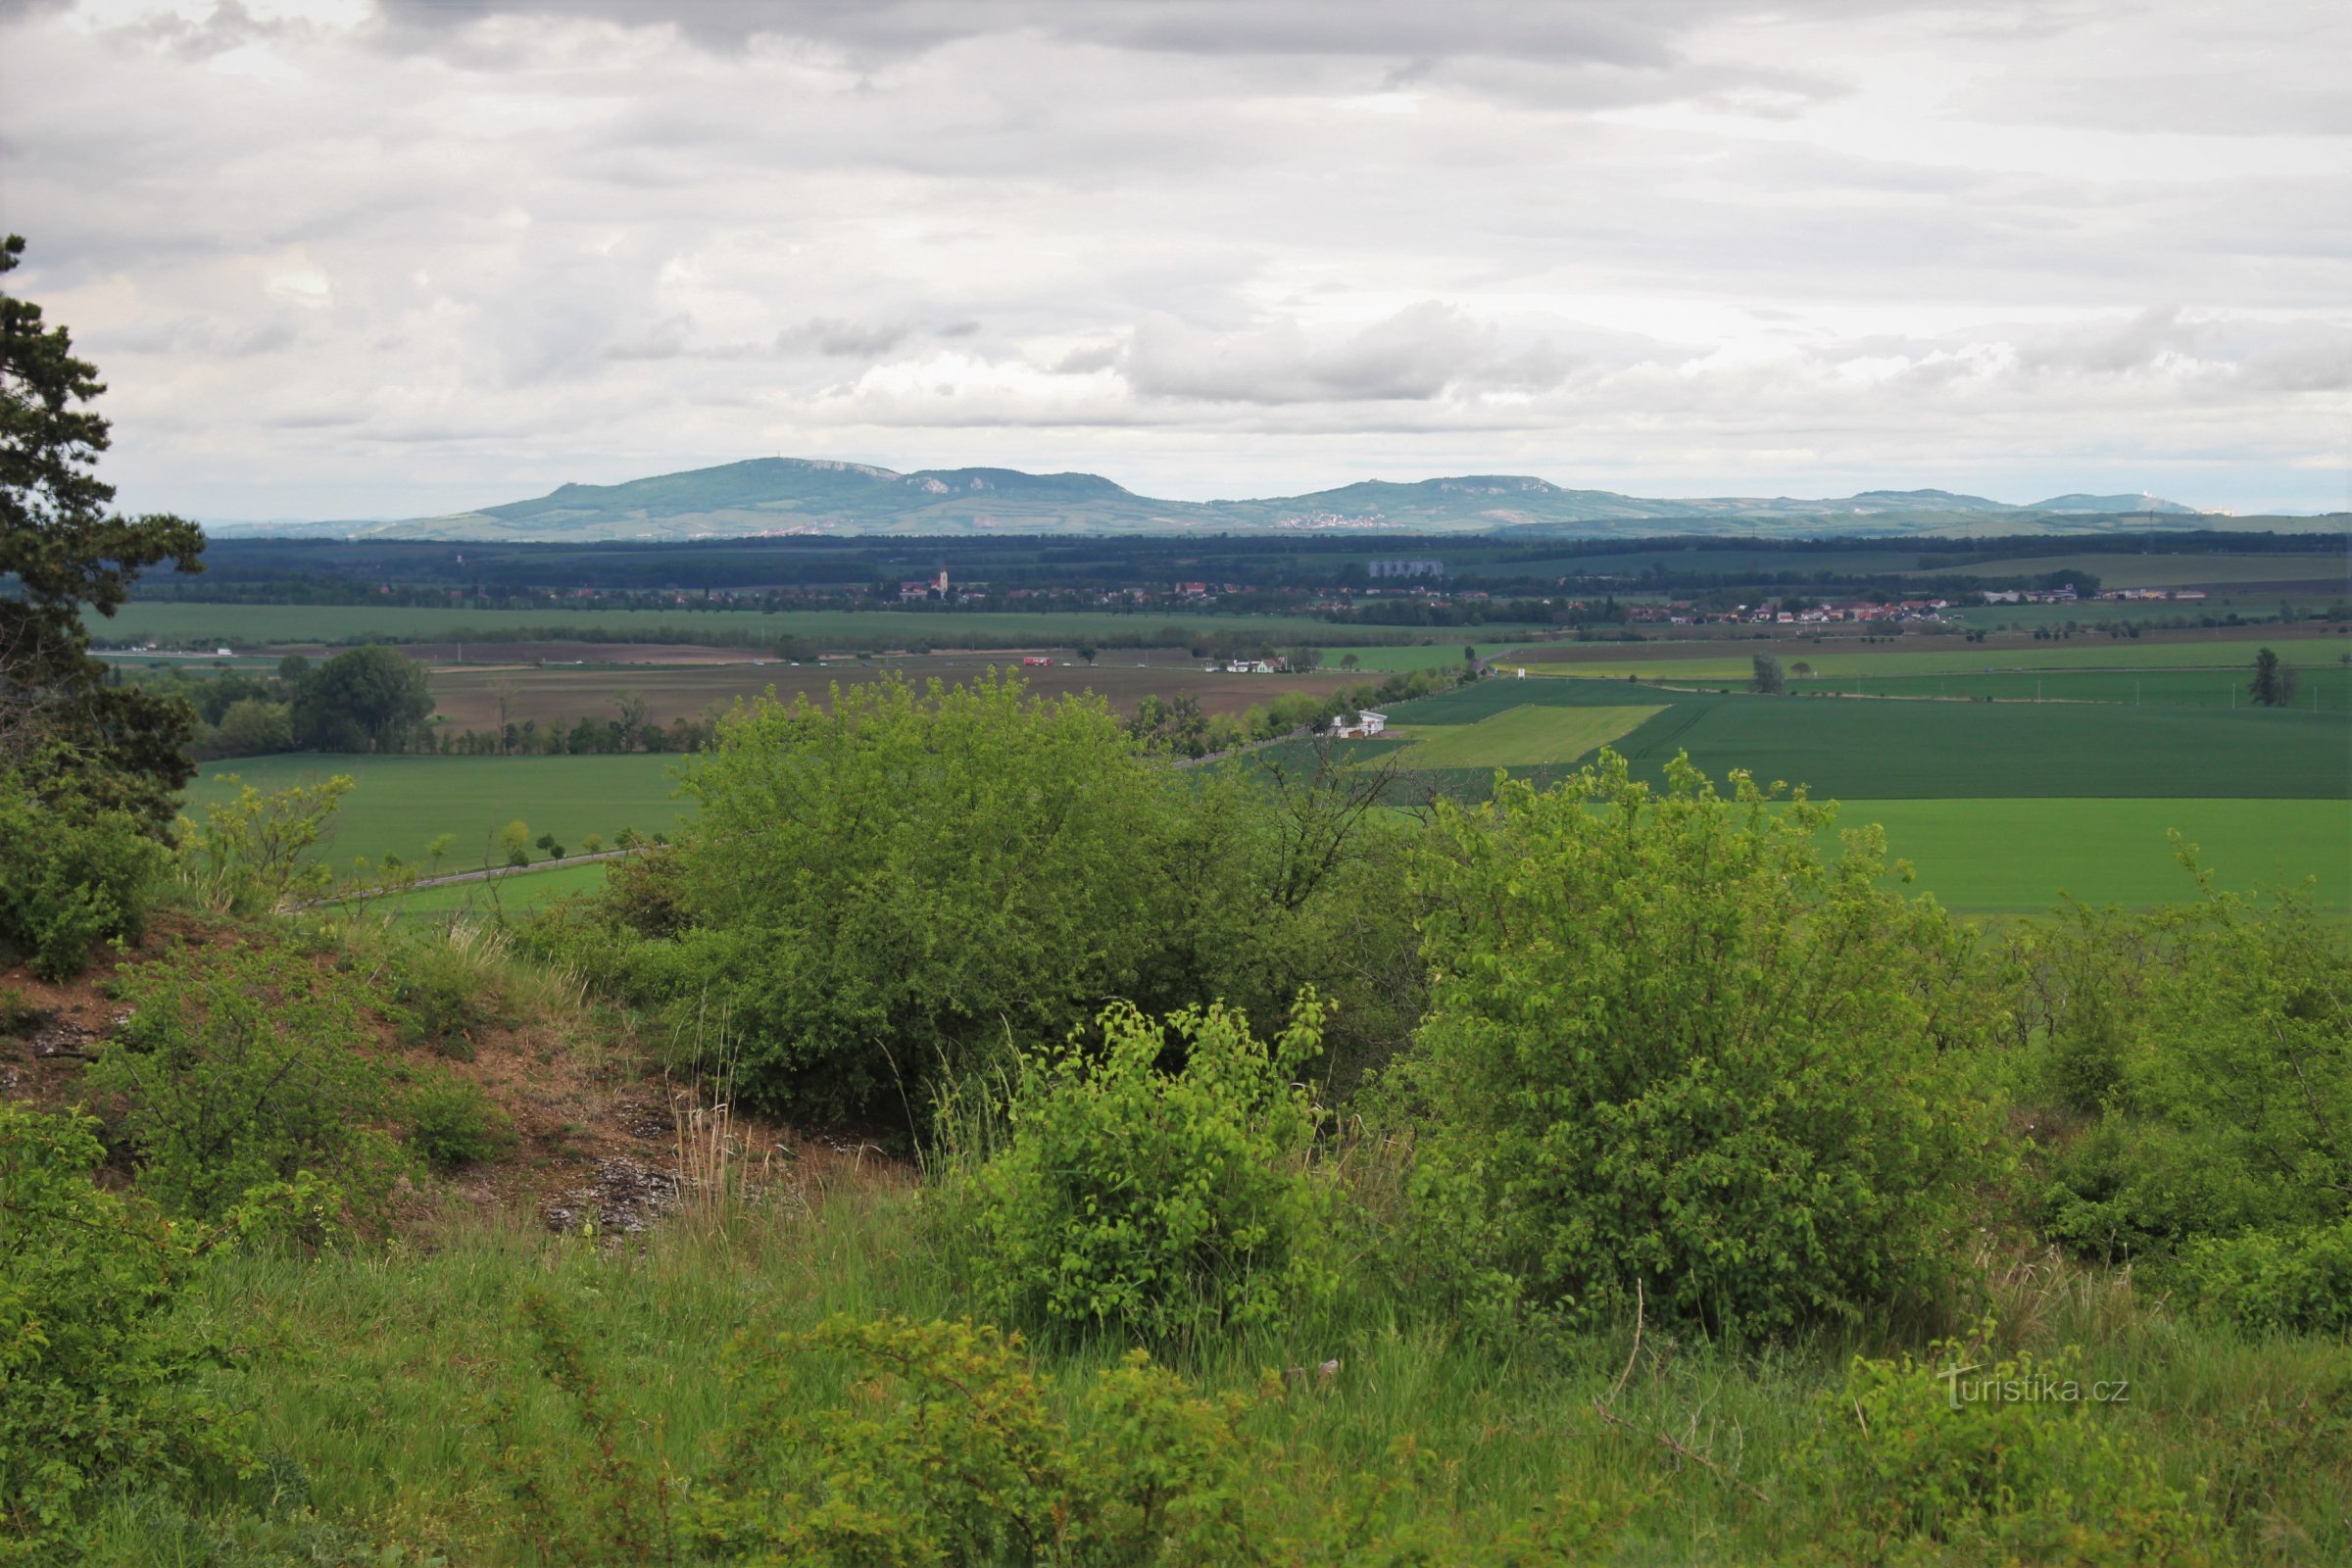 Ehkä mielenkiintoisin näkymä on kohti Pavlovské vrchyn harjun panoraamaa